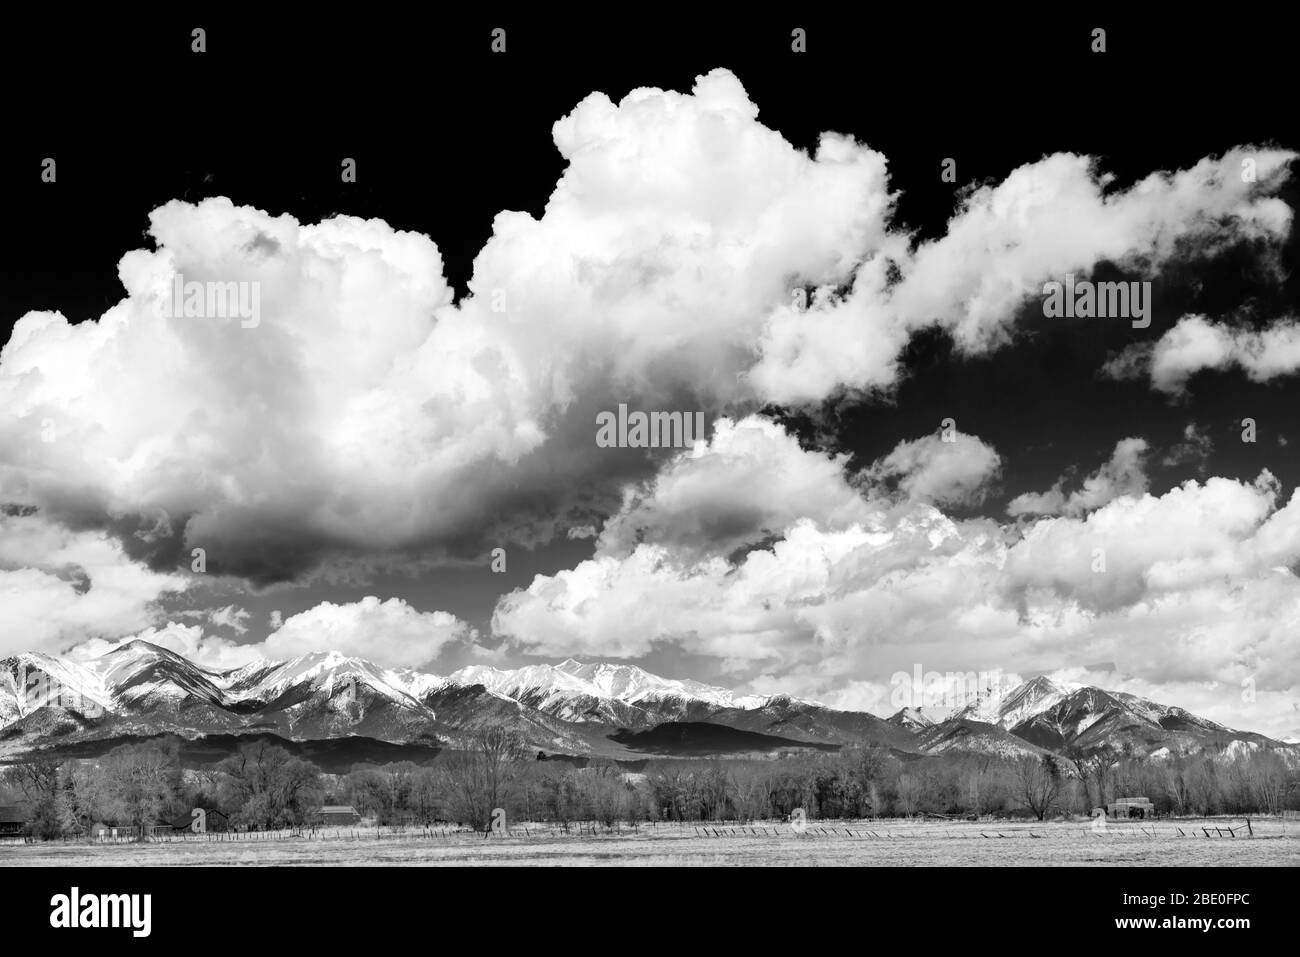 Noir et blanc de neige capping Ange de Savano; Mt. Shavano; Collégiale Peaks; montagnes Rocheuses; Colorado central; États-Unis Banque D'Images